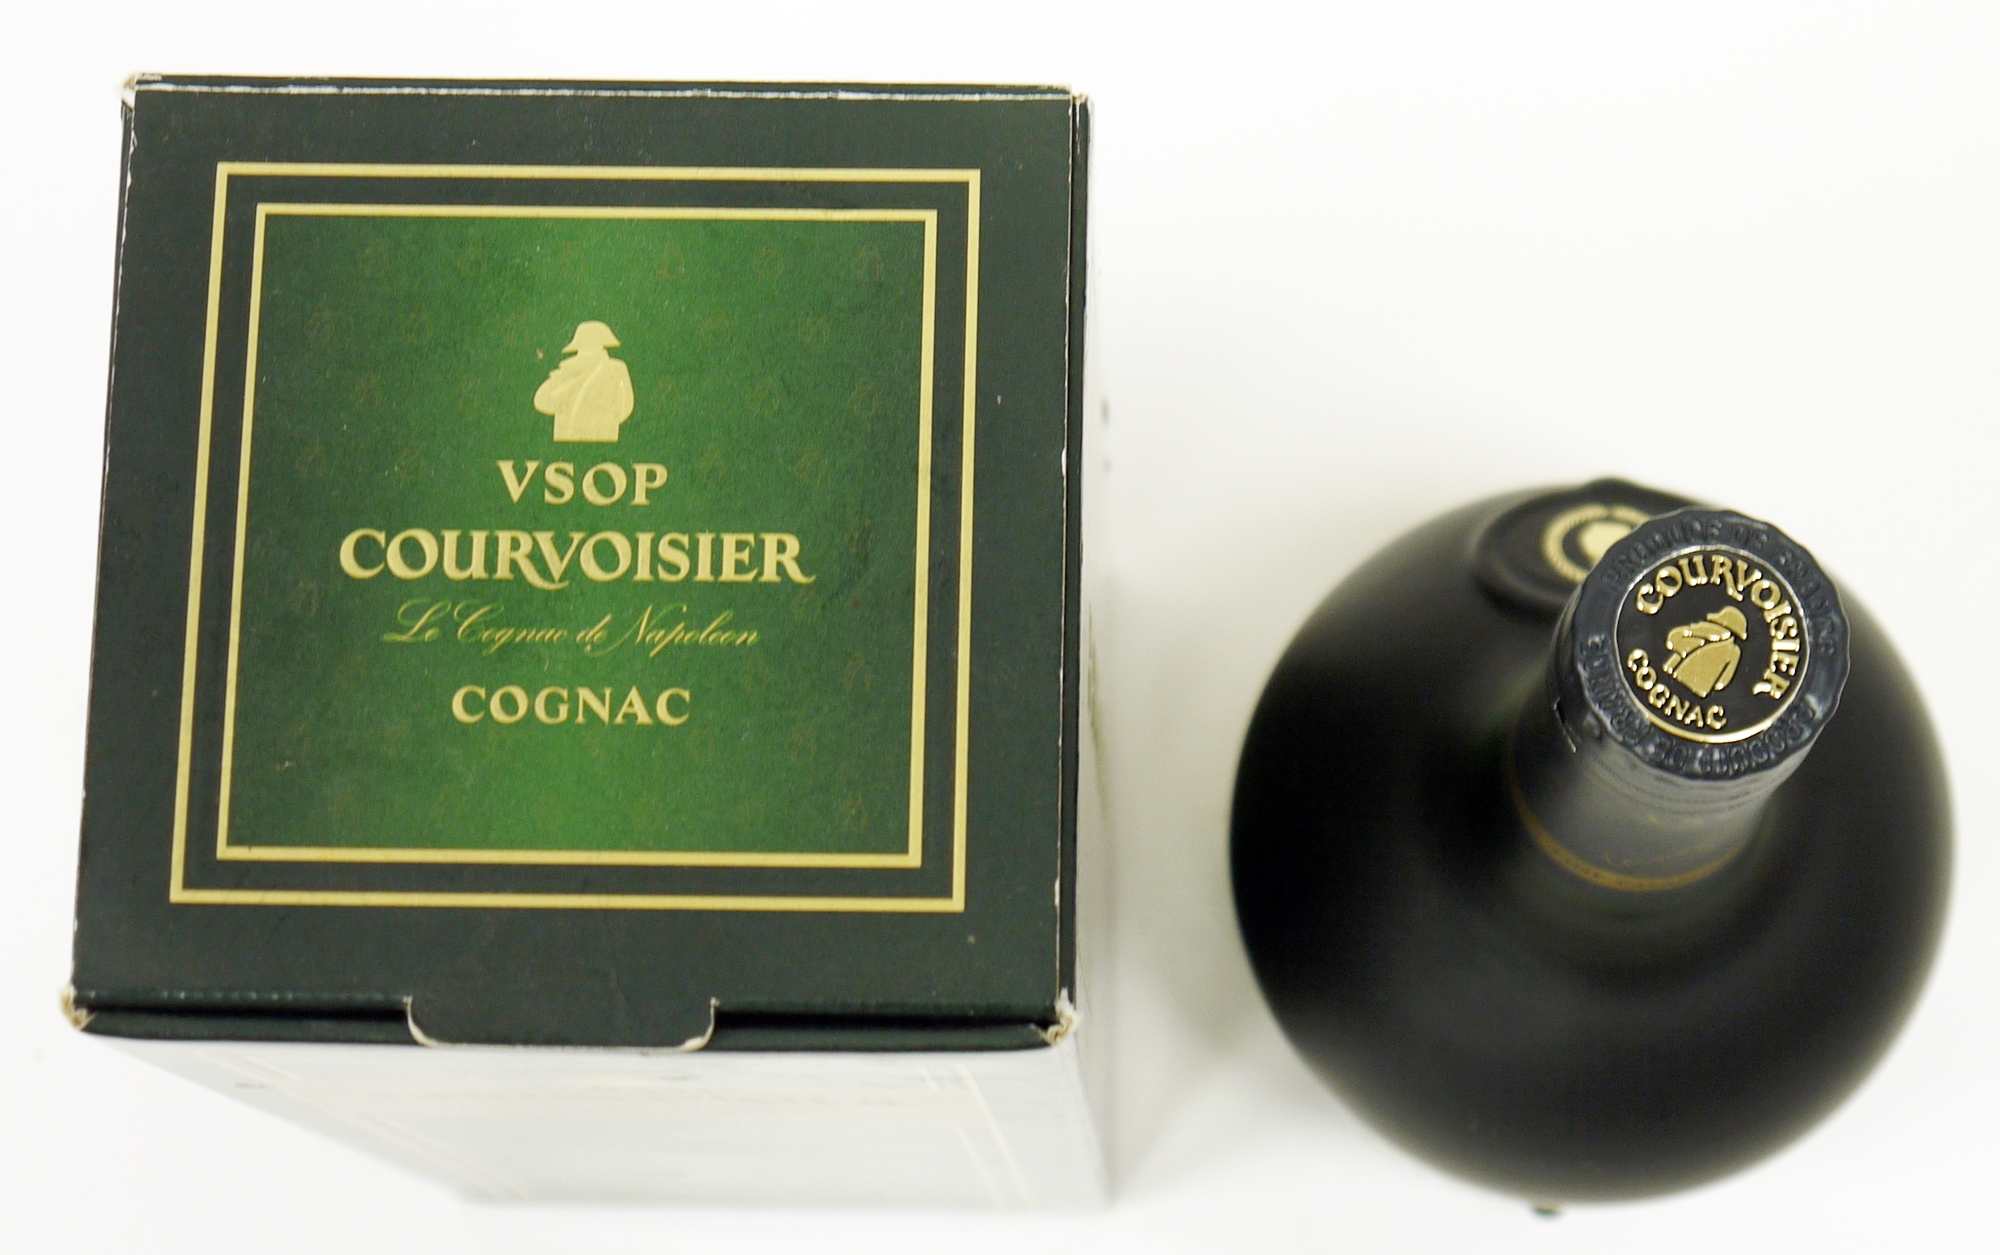 Courvoisier VSOP Cognac, 50cl, 40% vol, in original box - Image 3 of 3